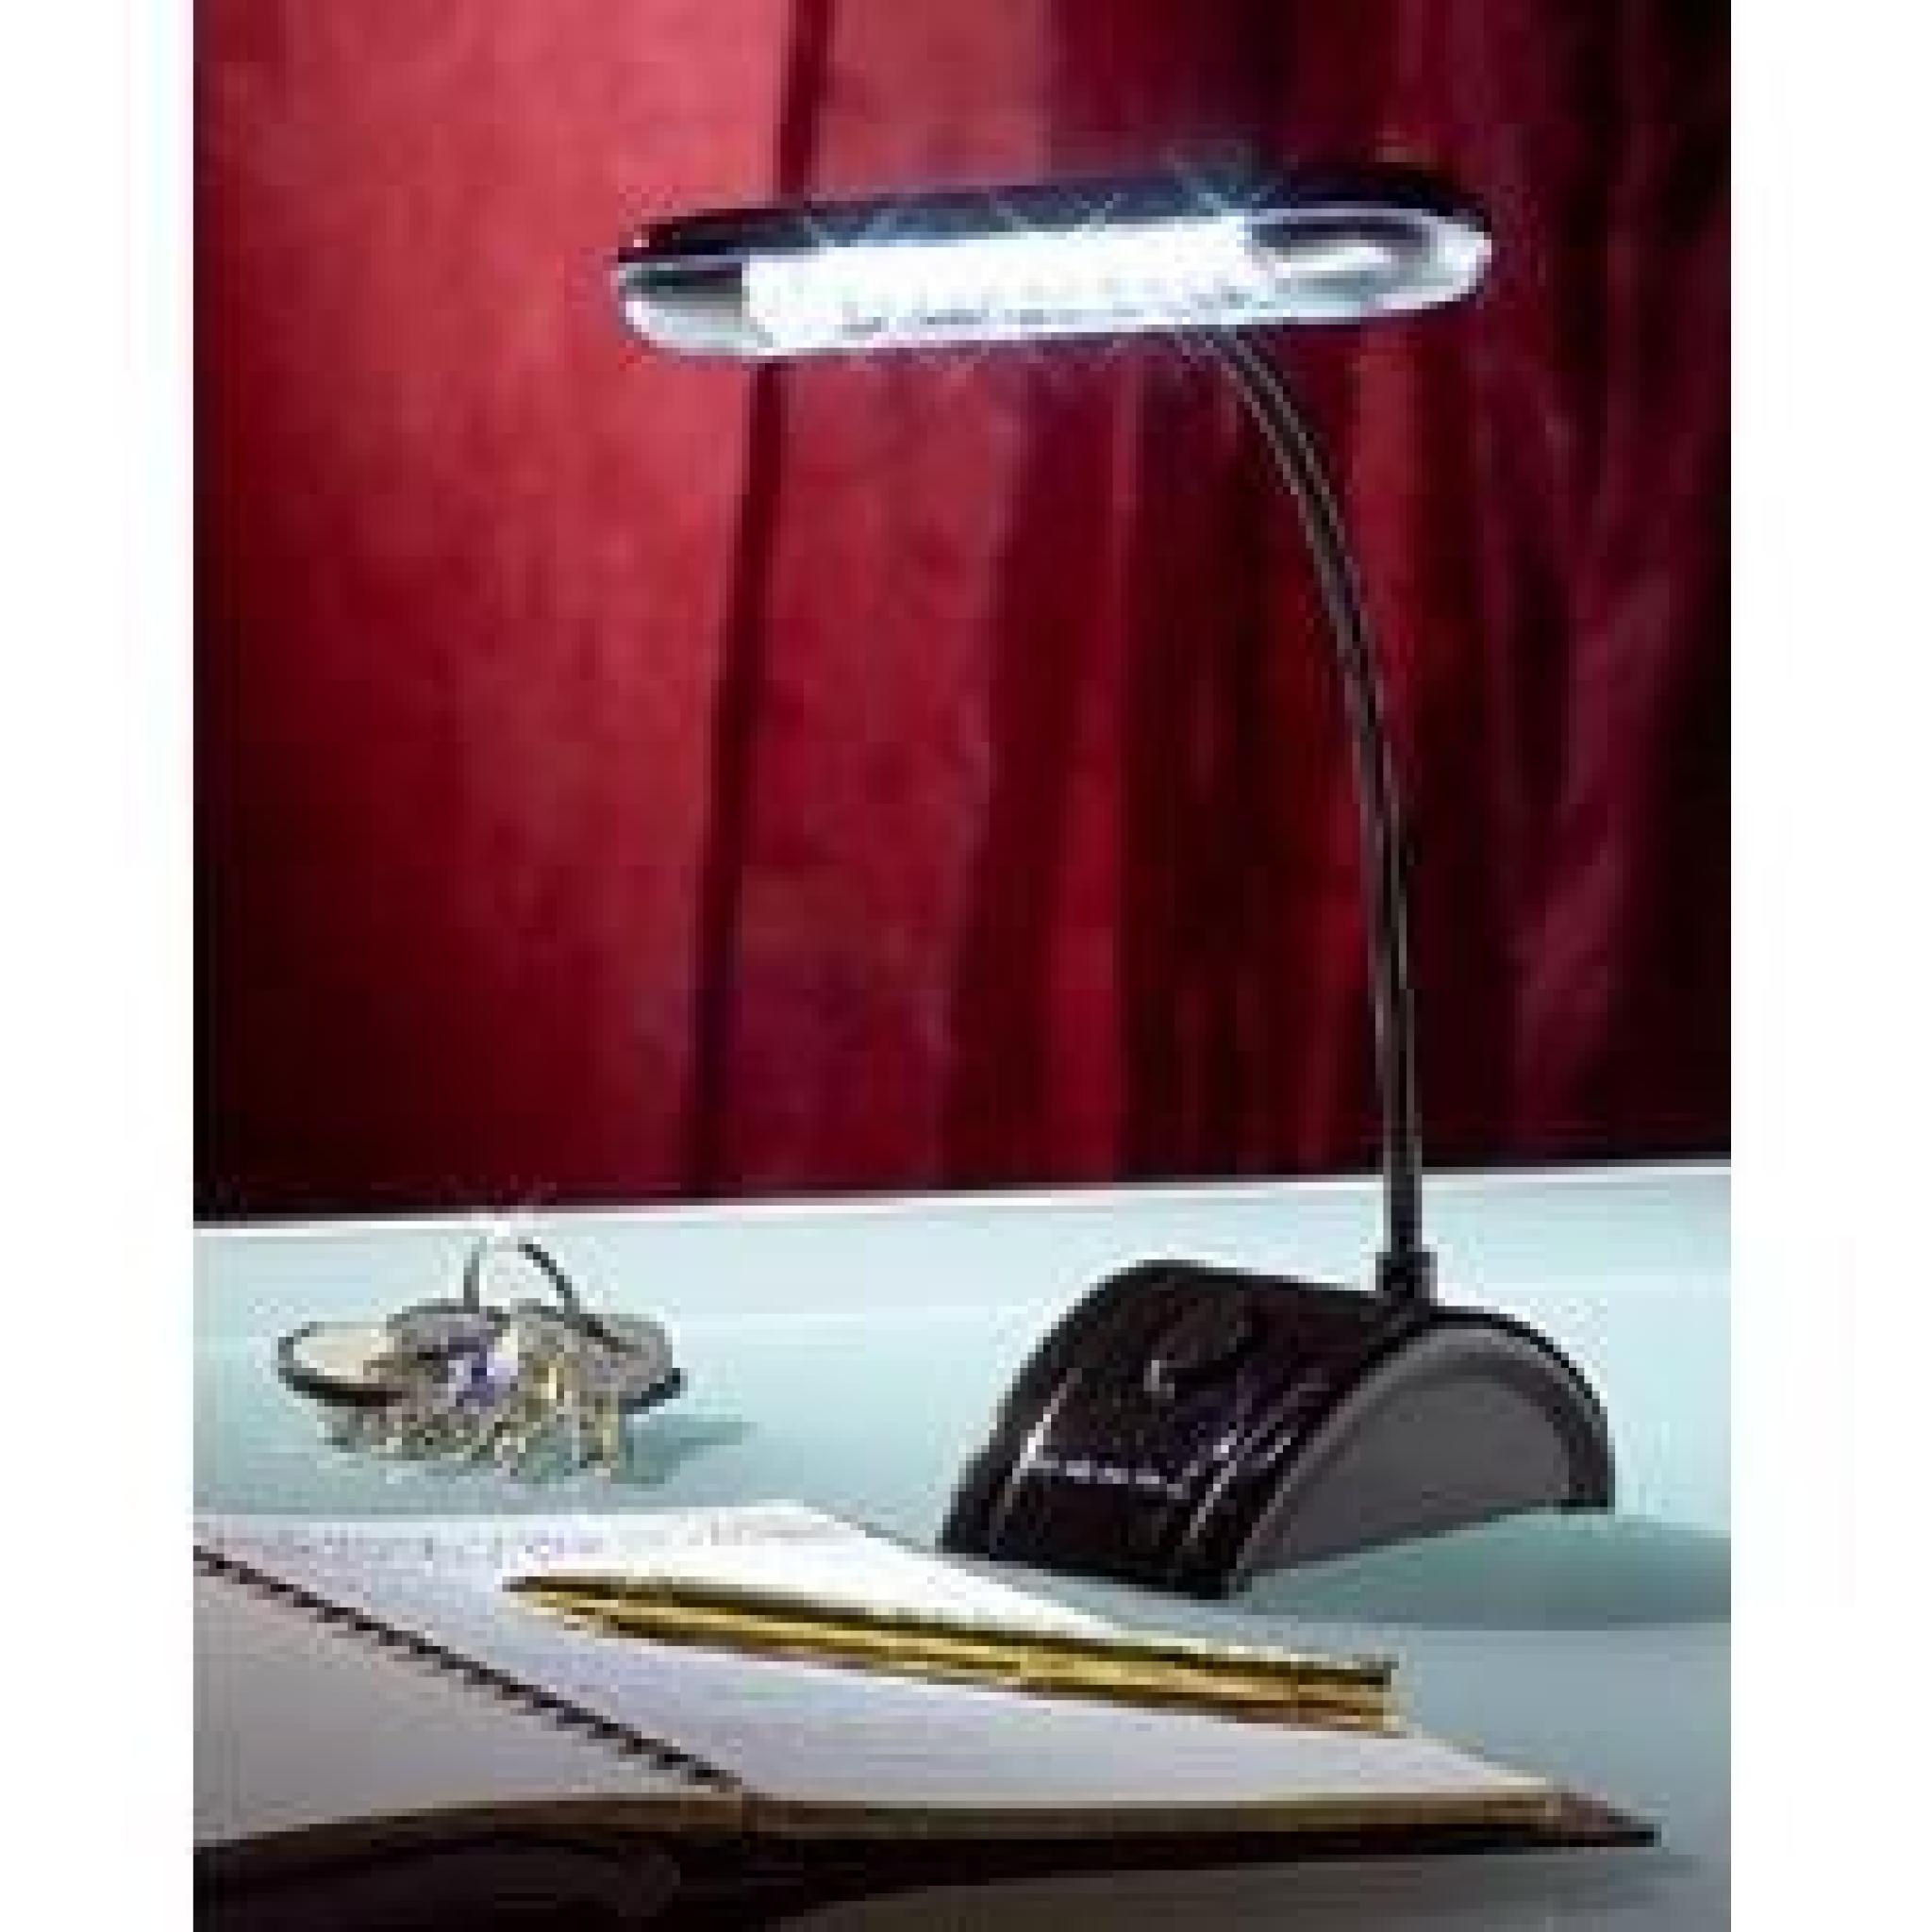 Lampe de bureau flexible à 12 LED